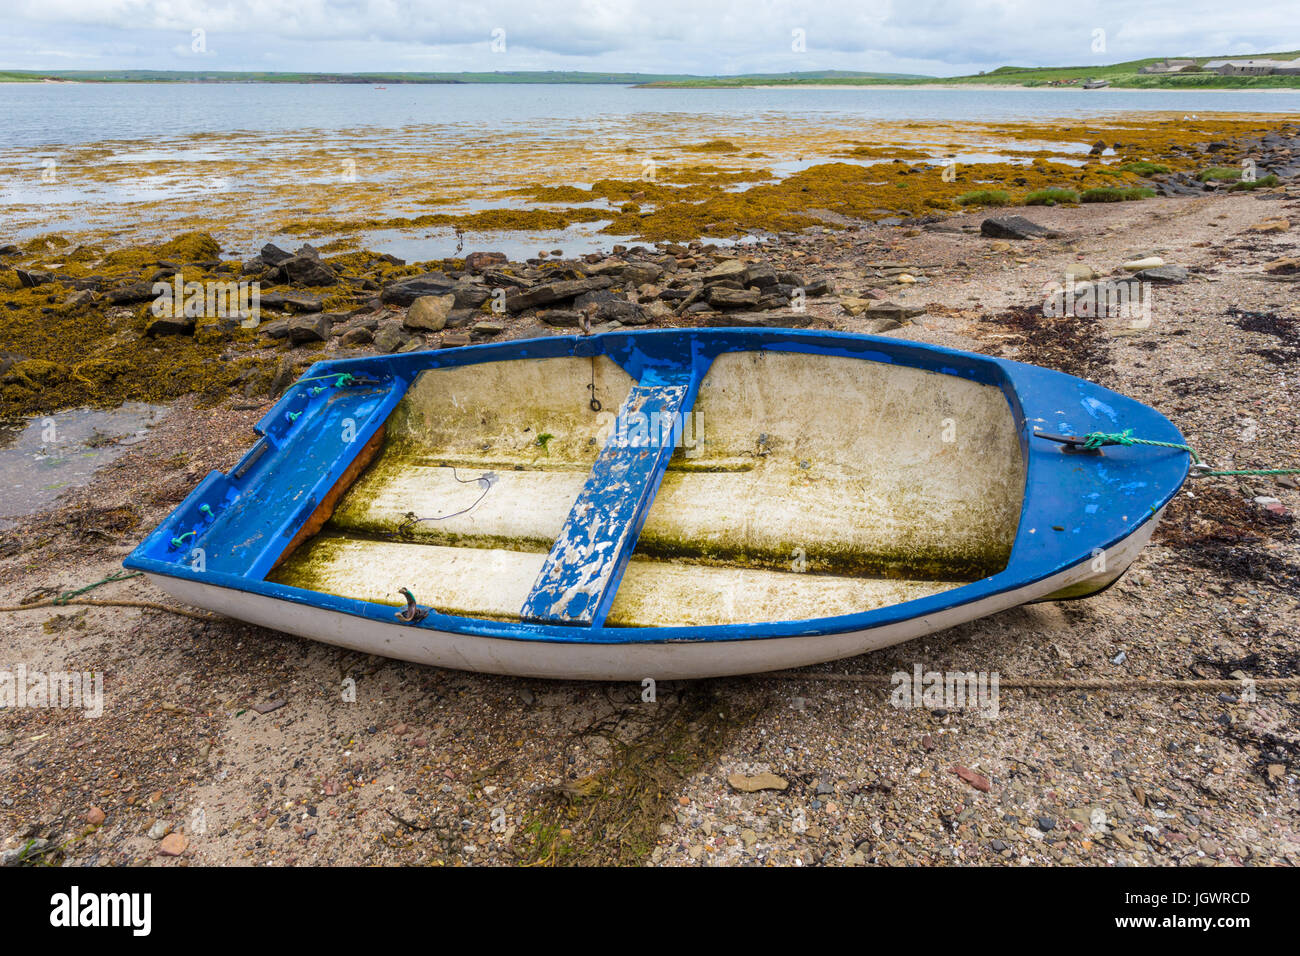 Vecchia barca a remi sulla riva con la bassa marea, isole Orcadi Scozia, Regno Unito Foto Stock